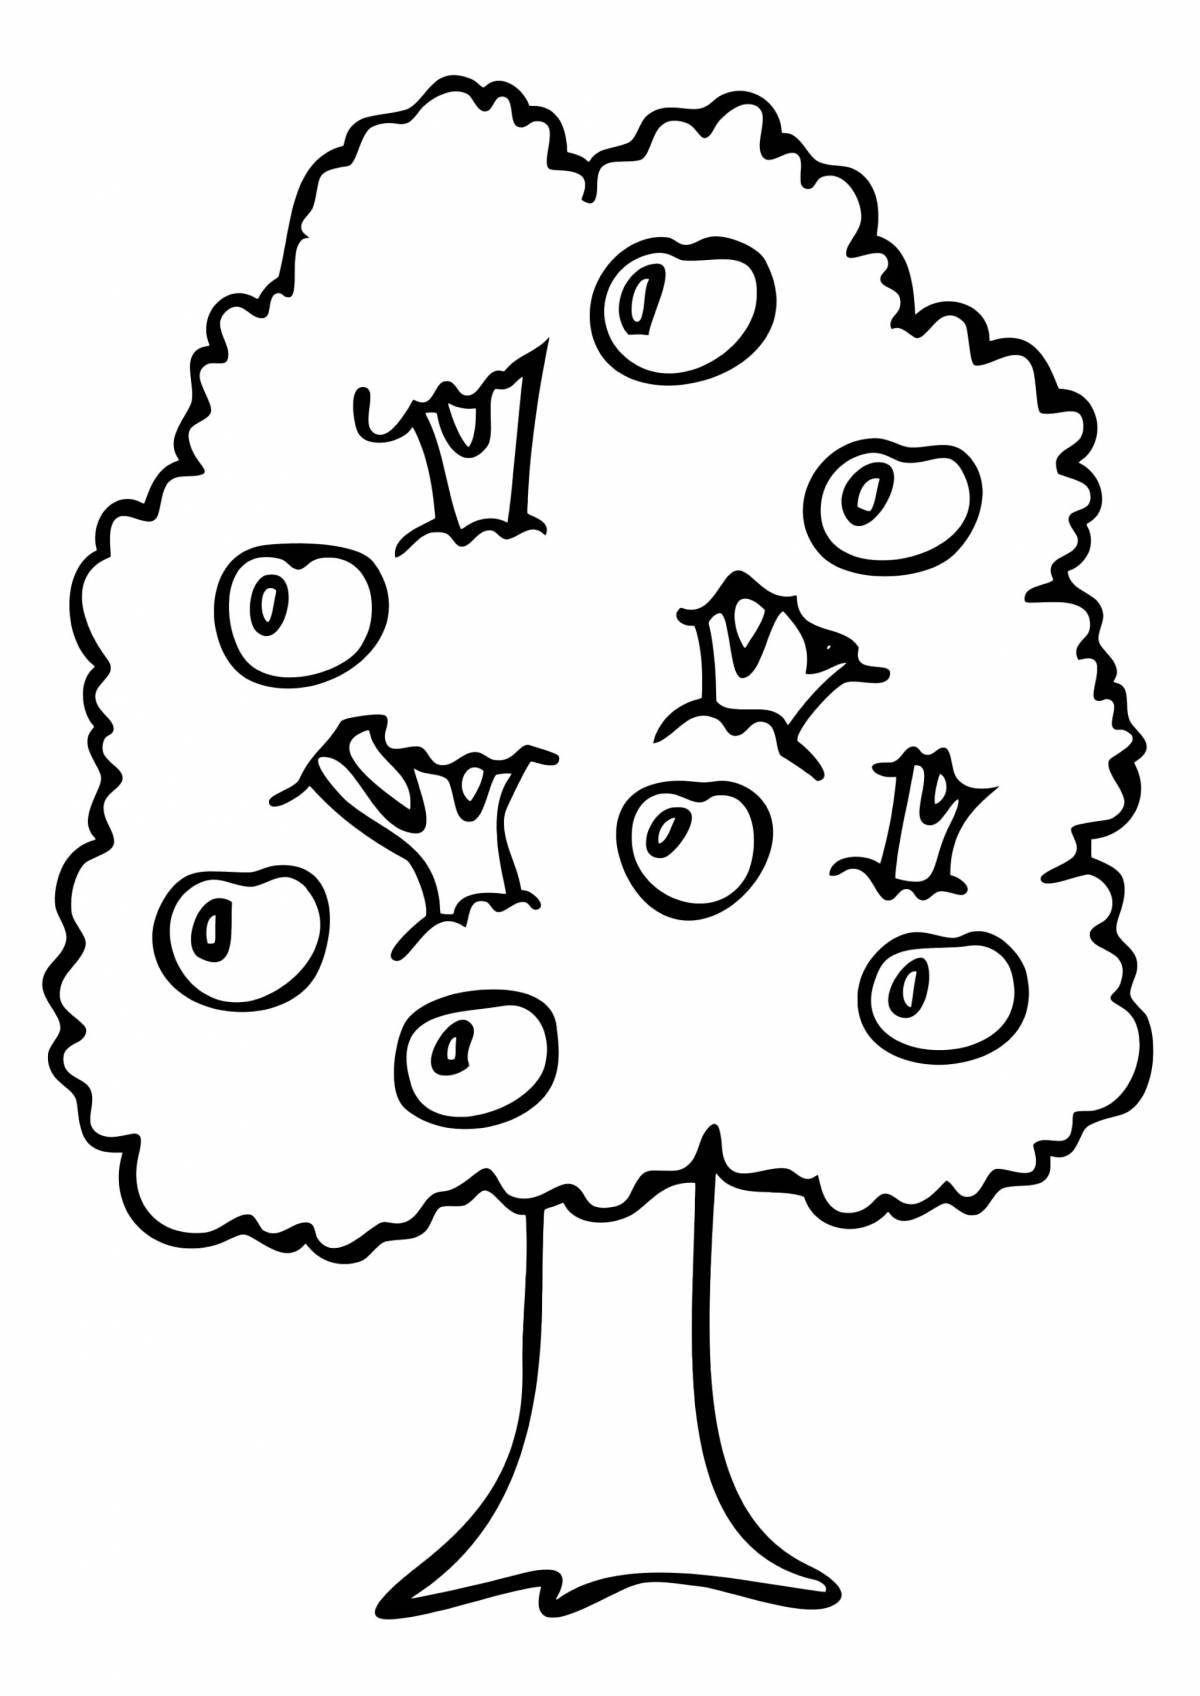 Страница раскраски сверкающего дерева для детей 3-4 лет